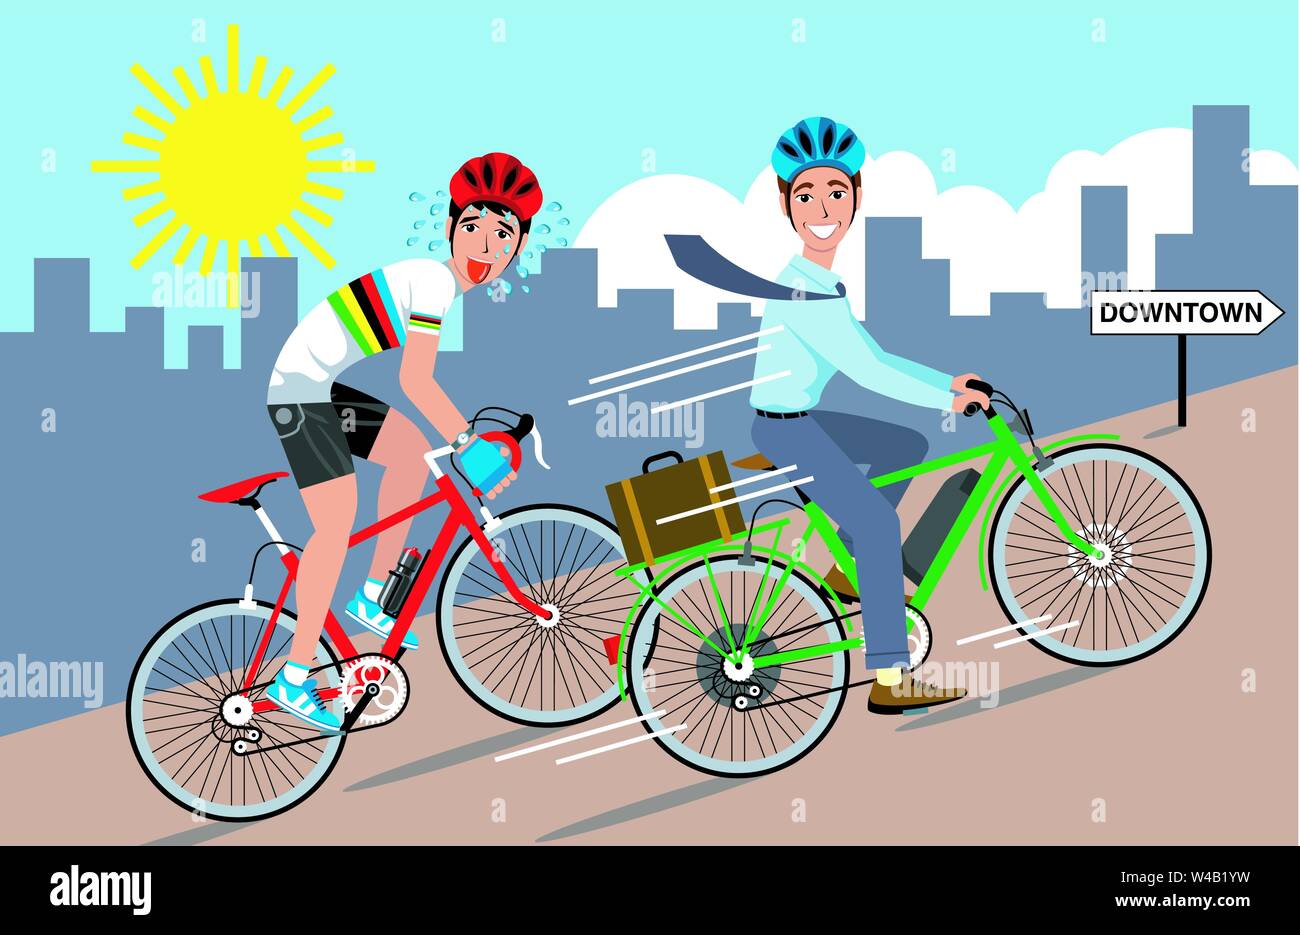 Illustrazione di due ciclisti andando su per una collina ripida uno su un verde bicicletta elettrica e le altre su un pedale rosso bike. Illustrazione Vettoriale